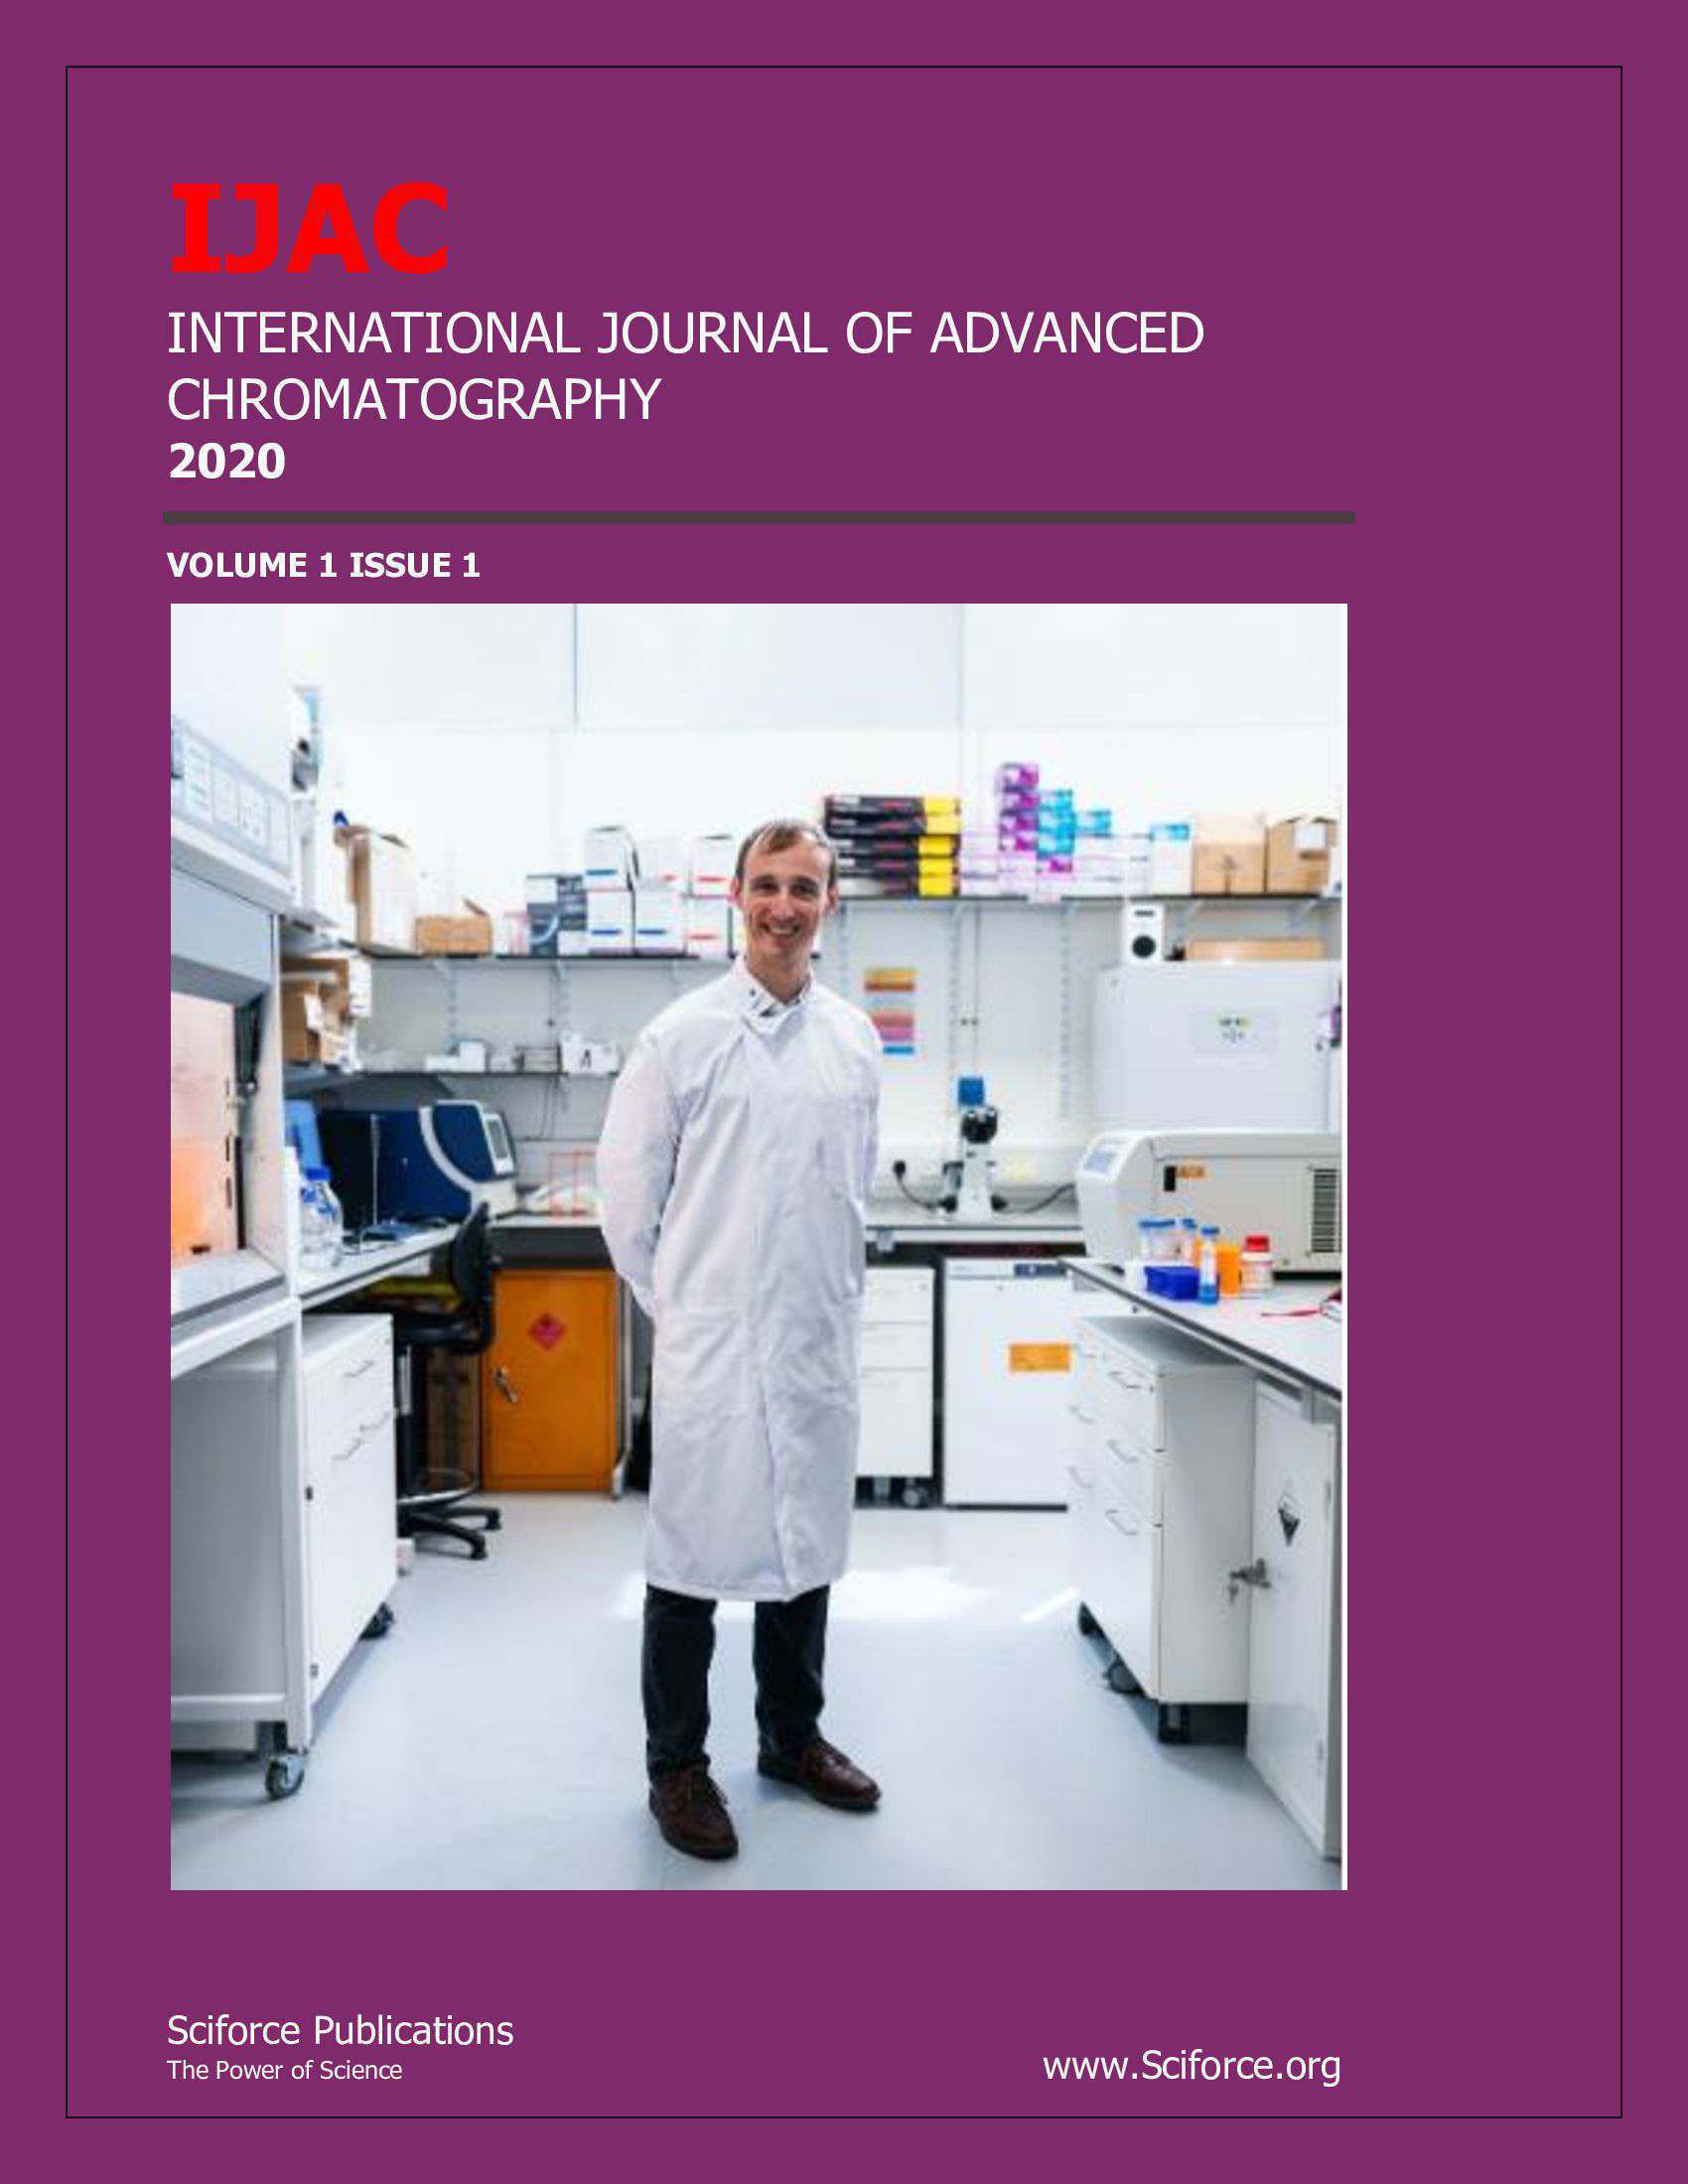 International Journal of Advanced Chromatography